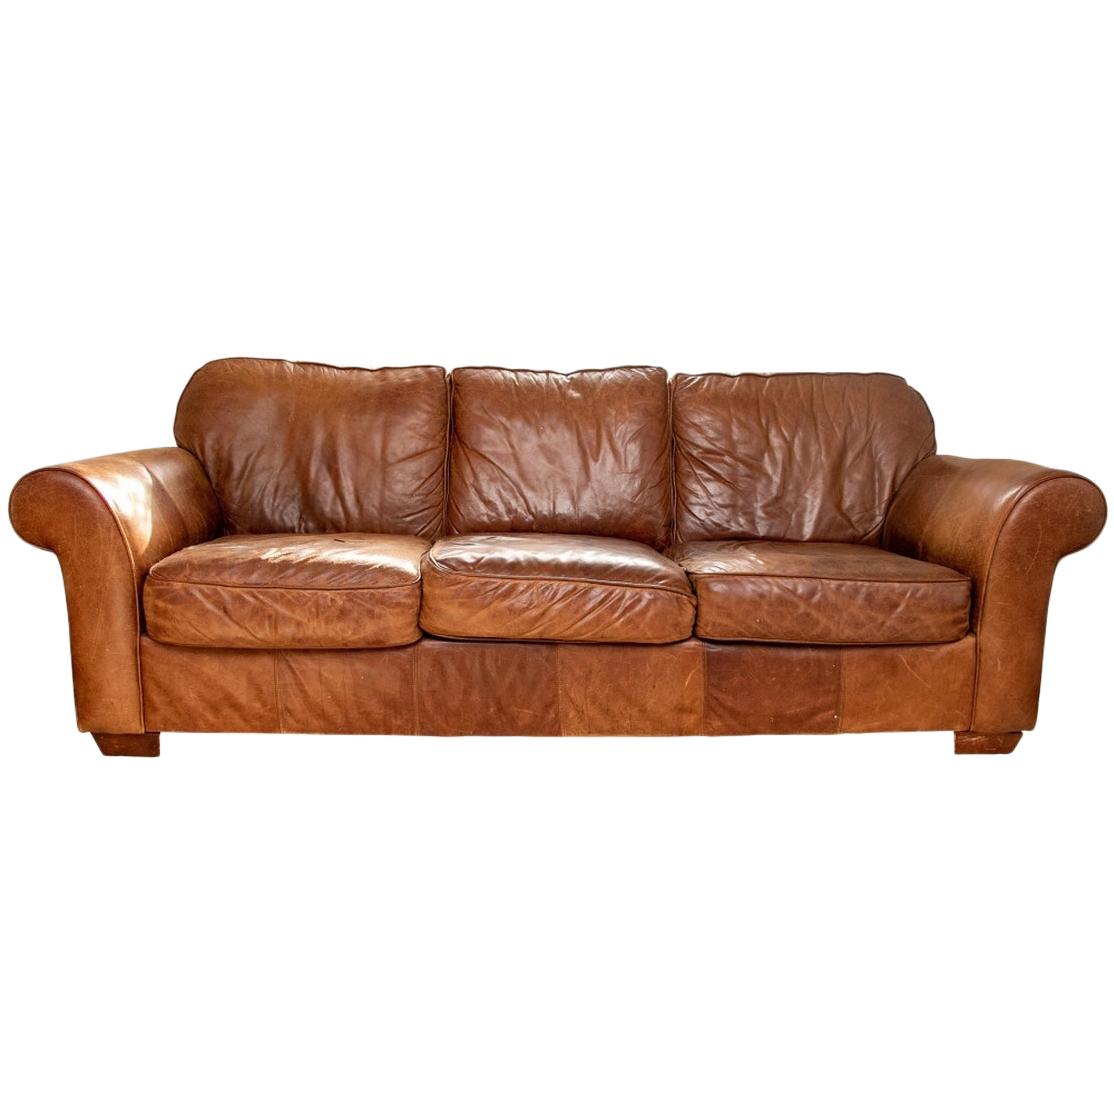 Distressed Vintage Leather Sofa